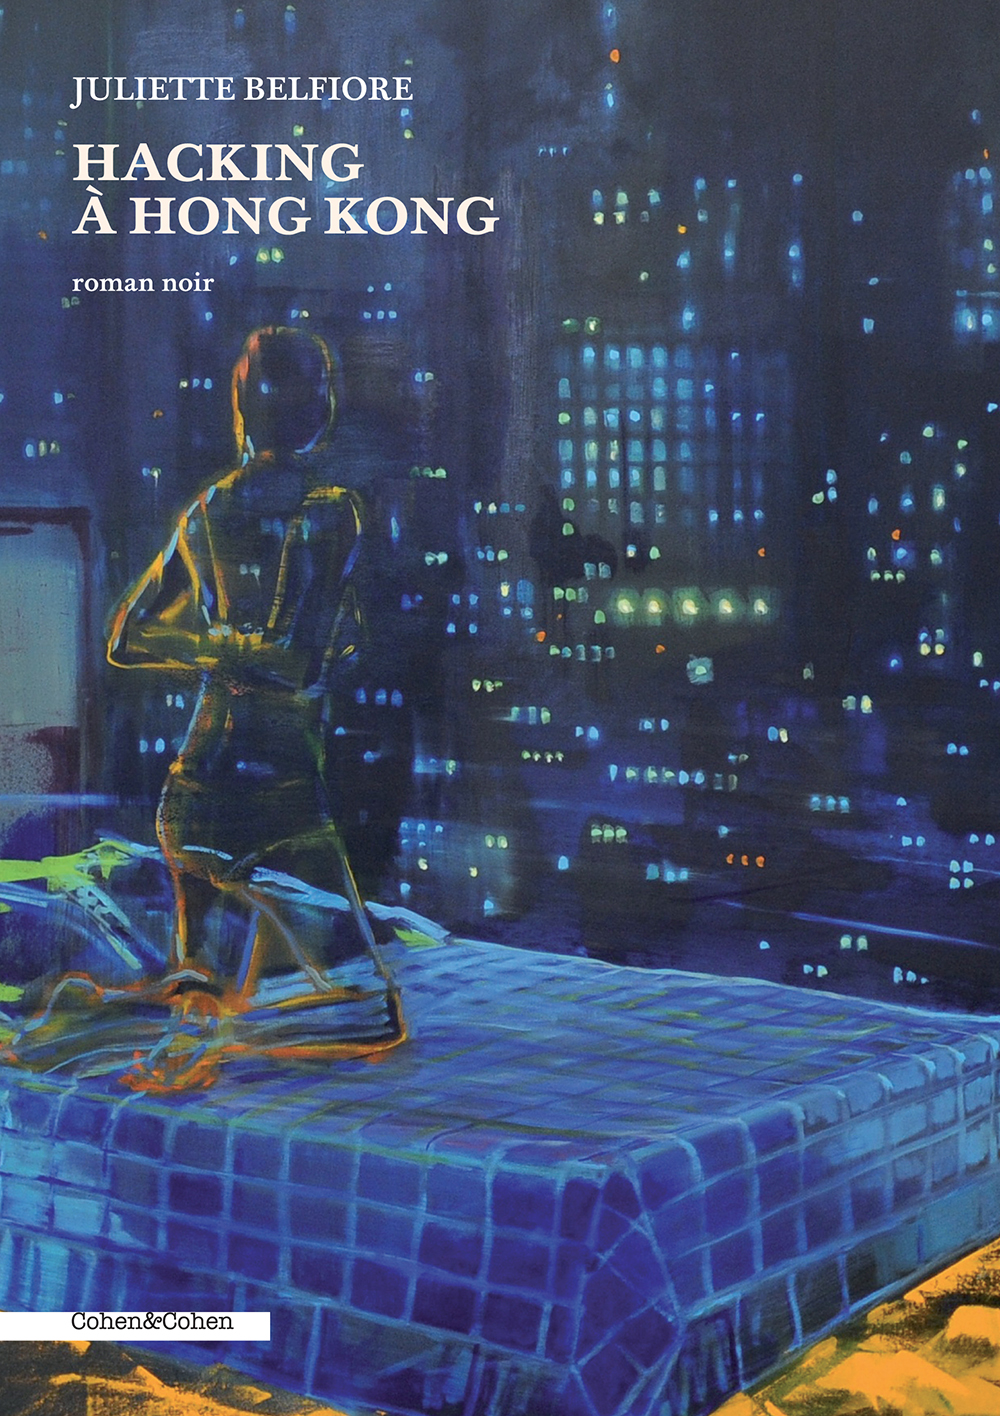 HACKING À HONG KONG